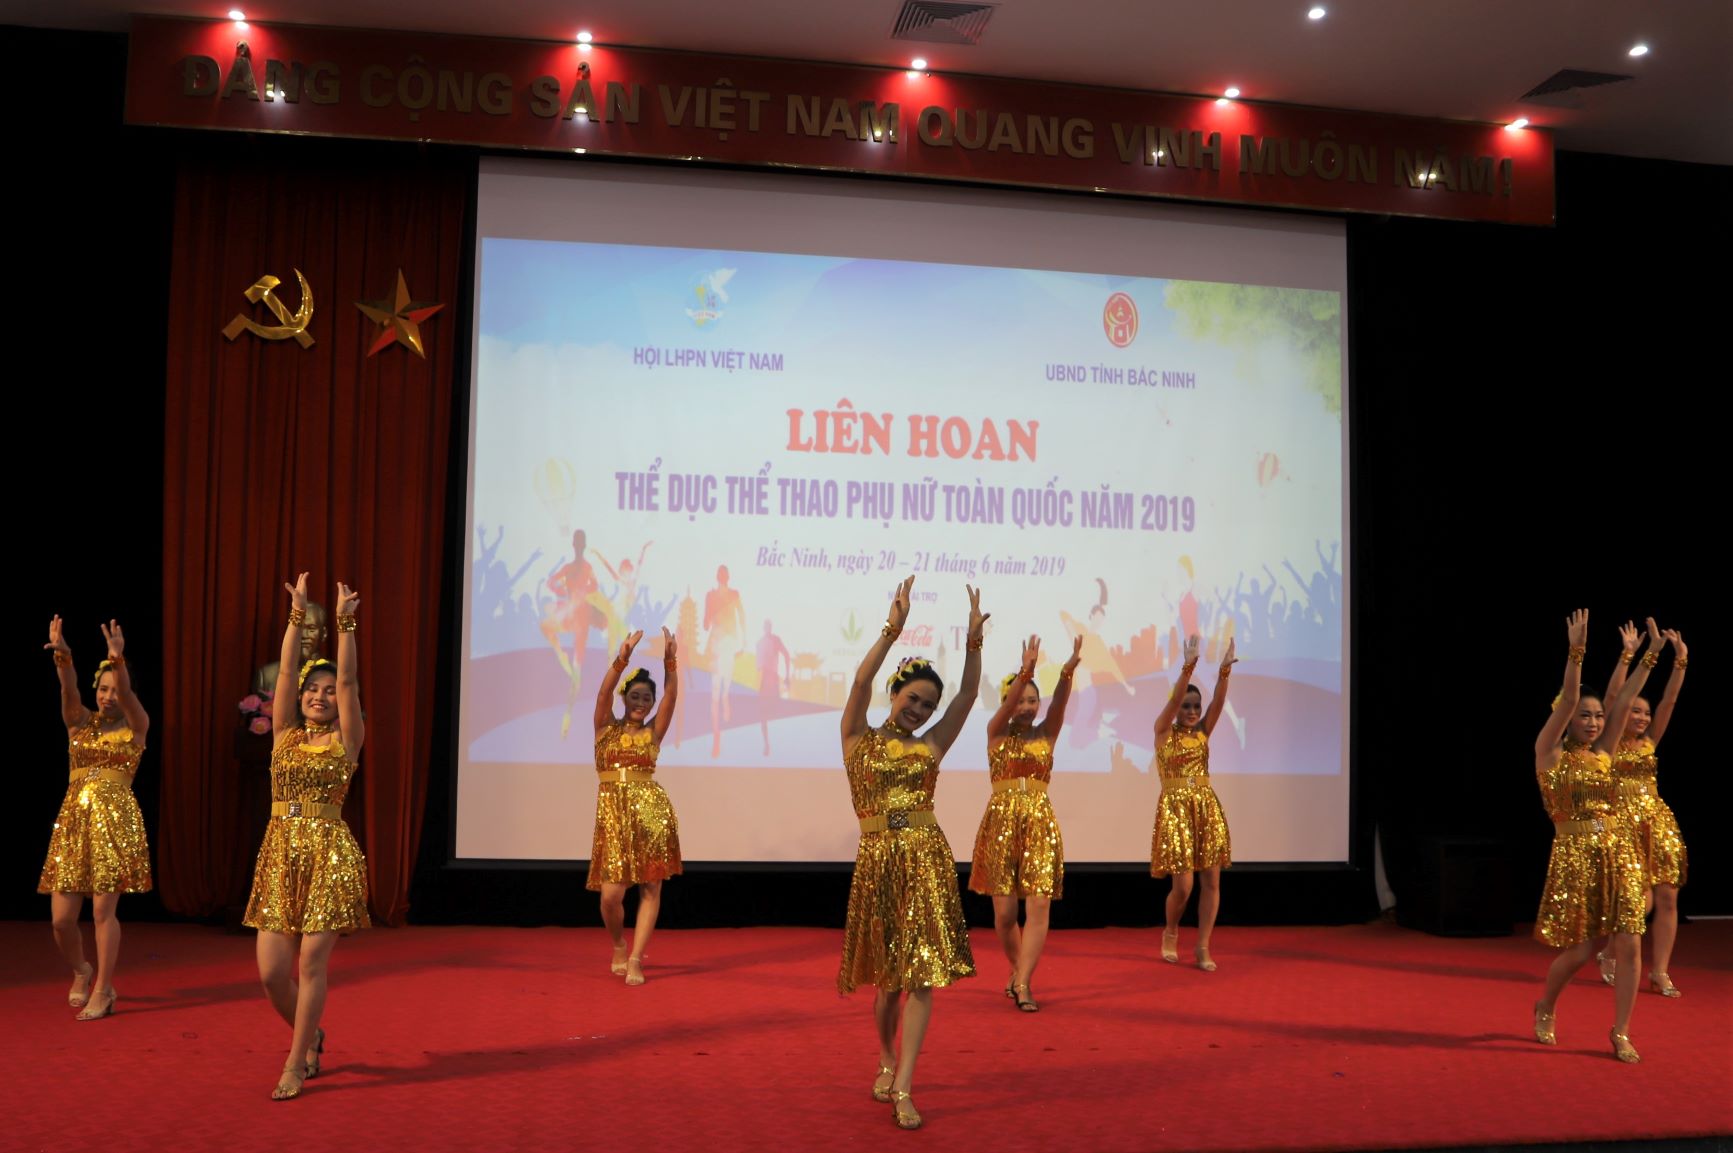 Sắc vàng ngập tràn sân khấu trong một tiết mục nhảy chachacha điệu nghệ của đoàn Bắc Giang